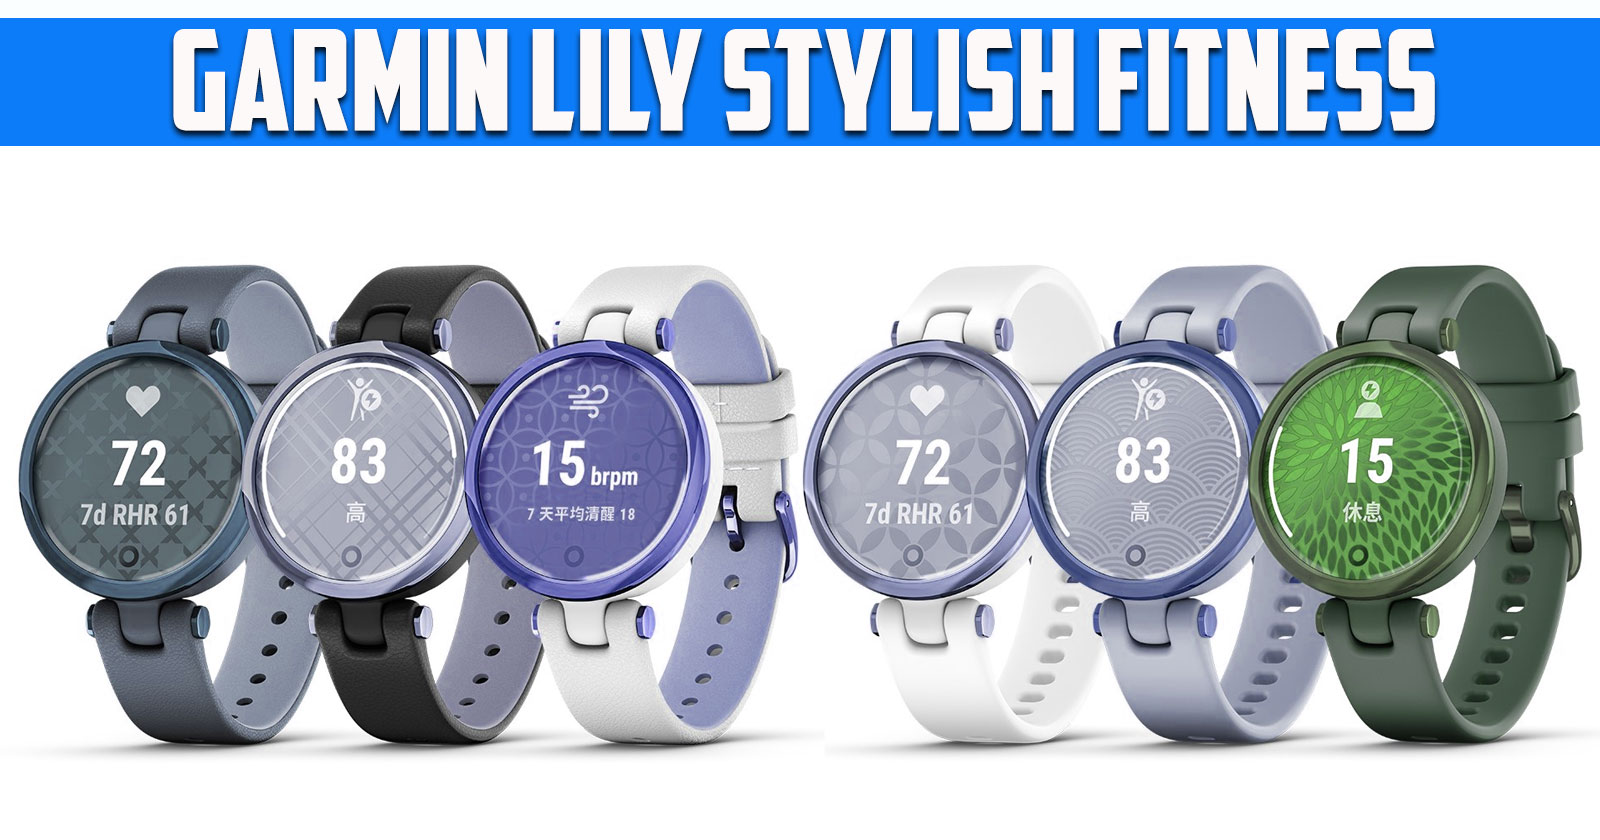 Garmin Lily Stylish Fitness Smartwatch